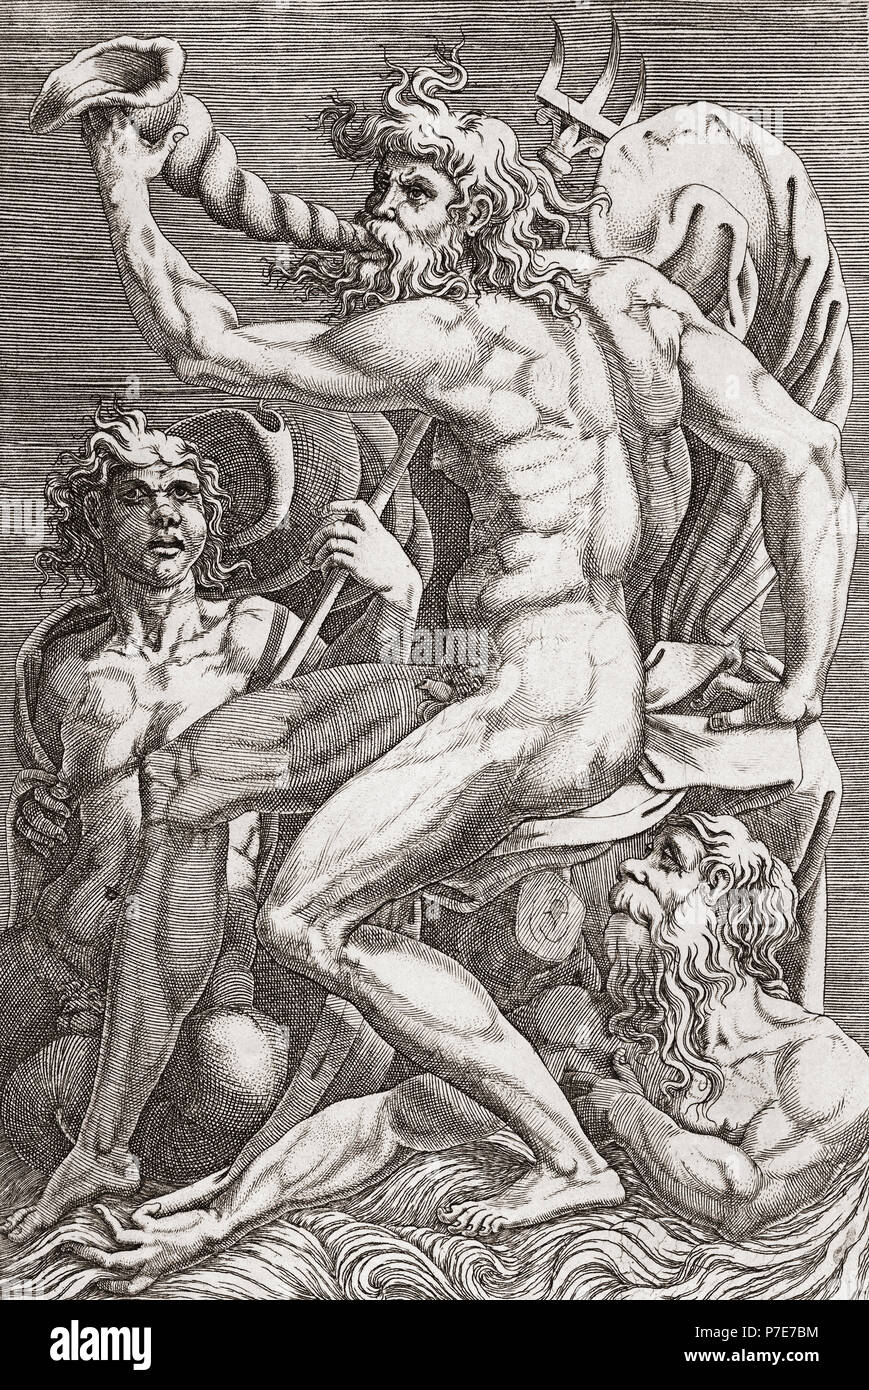 Neptun. Nach einem Kupferstich aus dem 16. Jahrhundert. Neptun war der römische Gott des Meeres, und auch der Pferde. Stockfoto